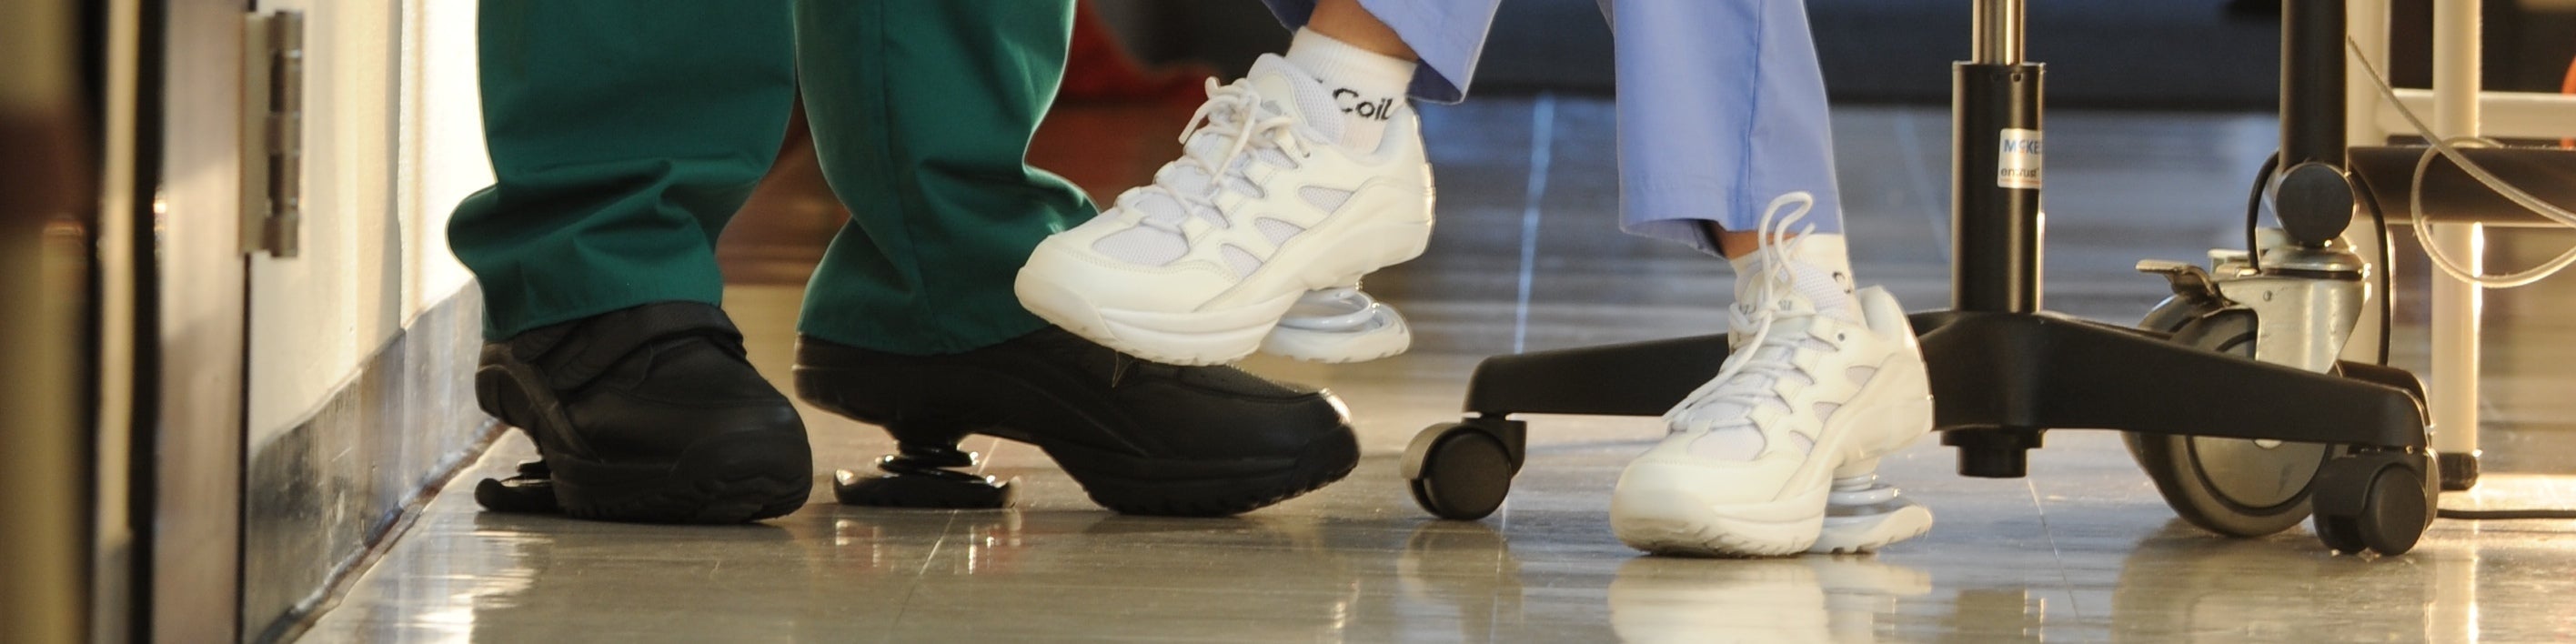 Z-CoiL sygeplejersker og læger, der bruger Z-CoiLs til at komme igennem lange vagter Smertelindrende ortotiske sko